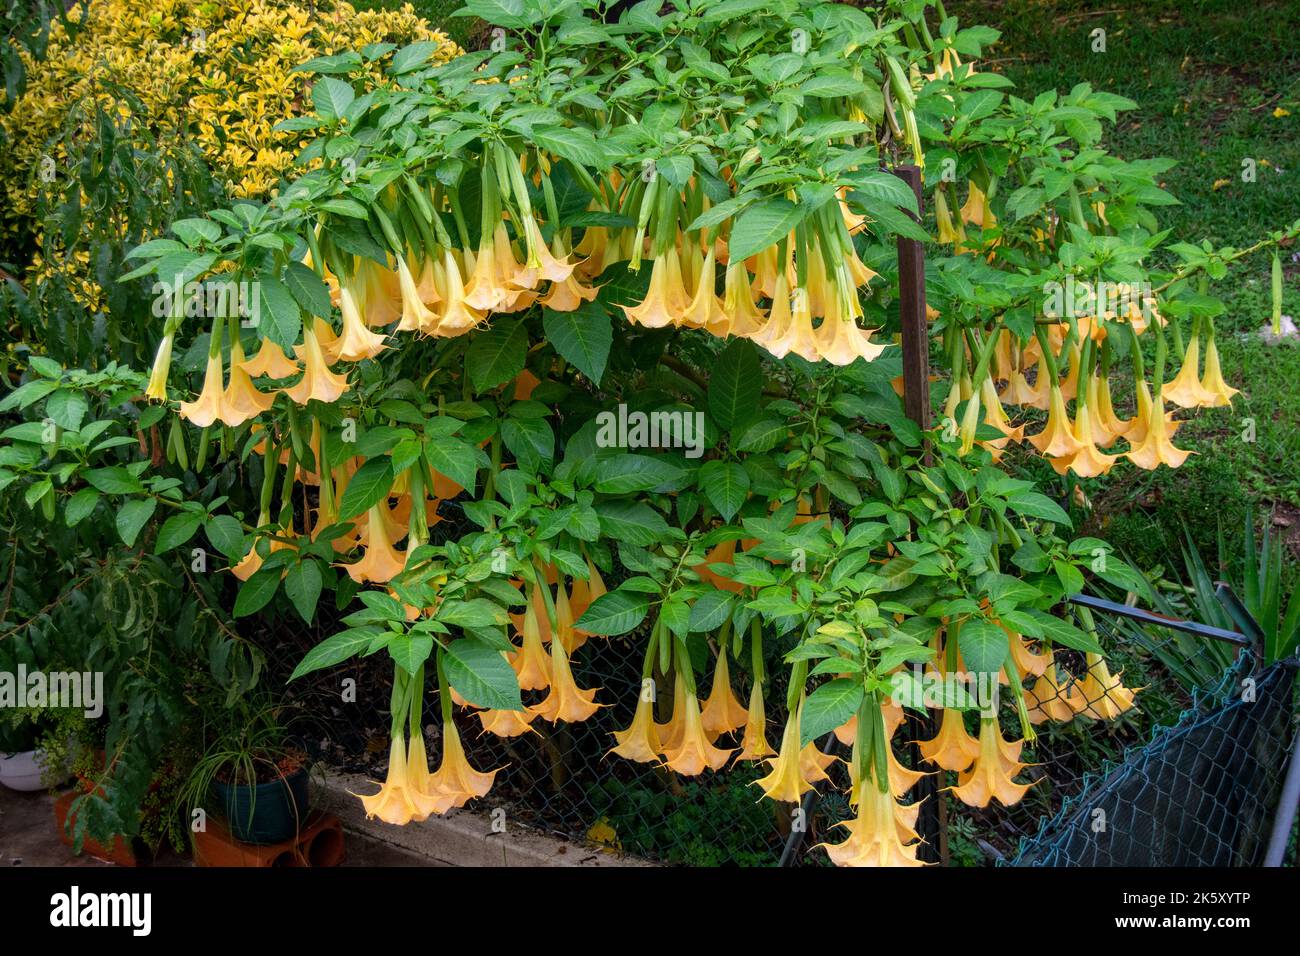 Brugmansia ist eine Gattung von sieben Arten von blühenden Pflanzen in der Nachtschattenfamilie Solanaceae. Sie sind holzige Bäume oder Sträucher mit hängenden Blüten. Stockfoto